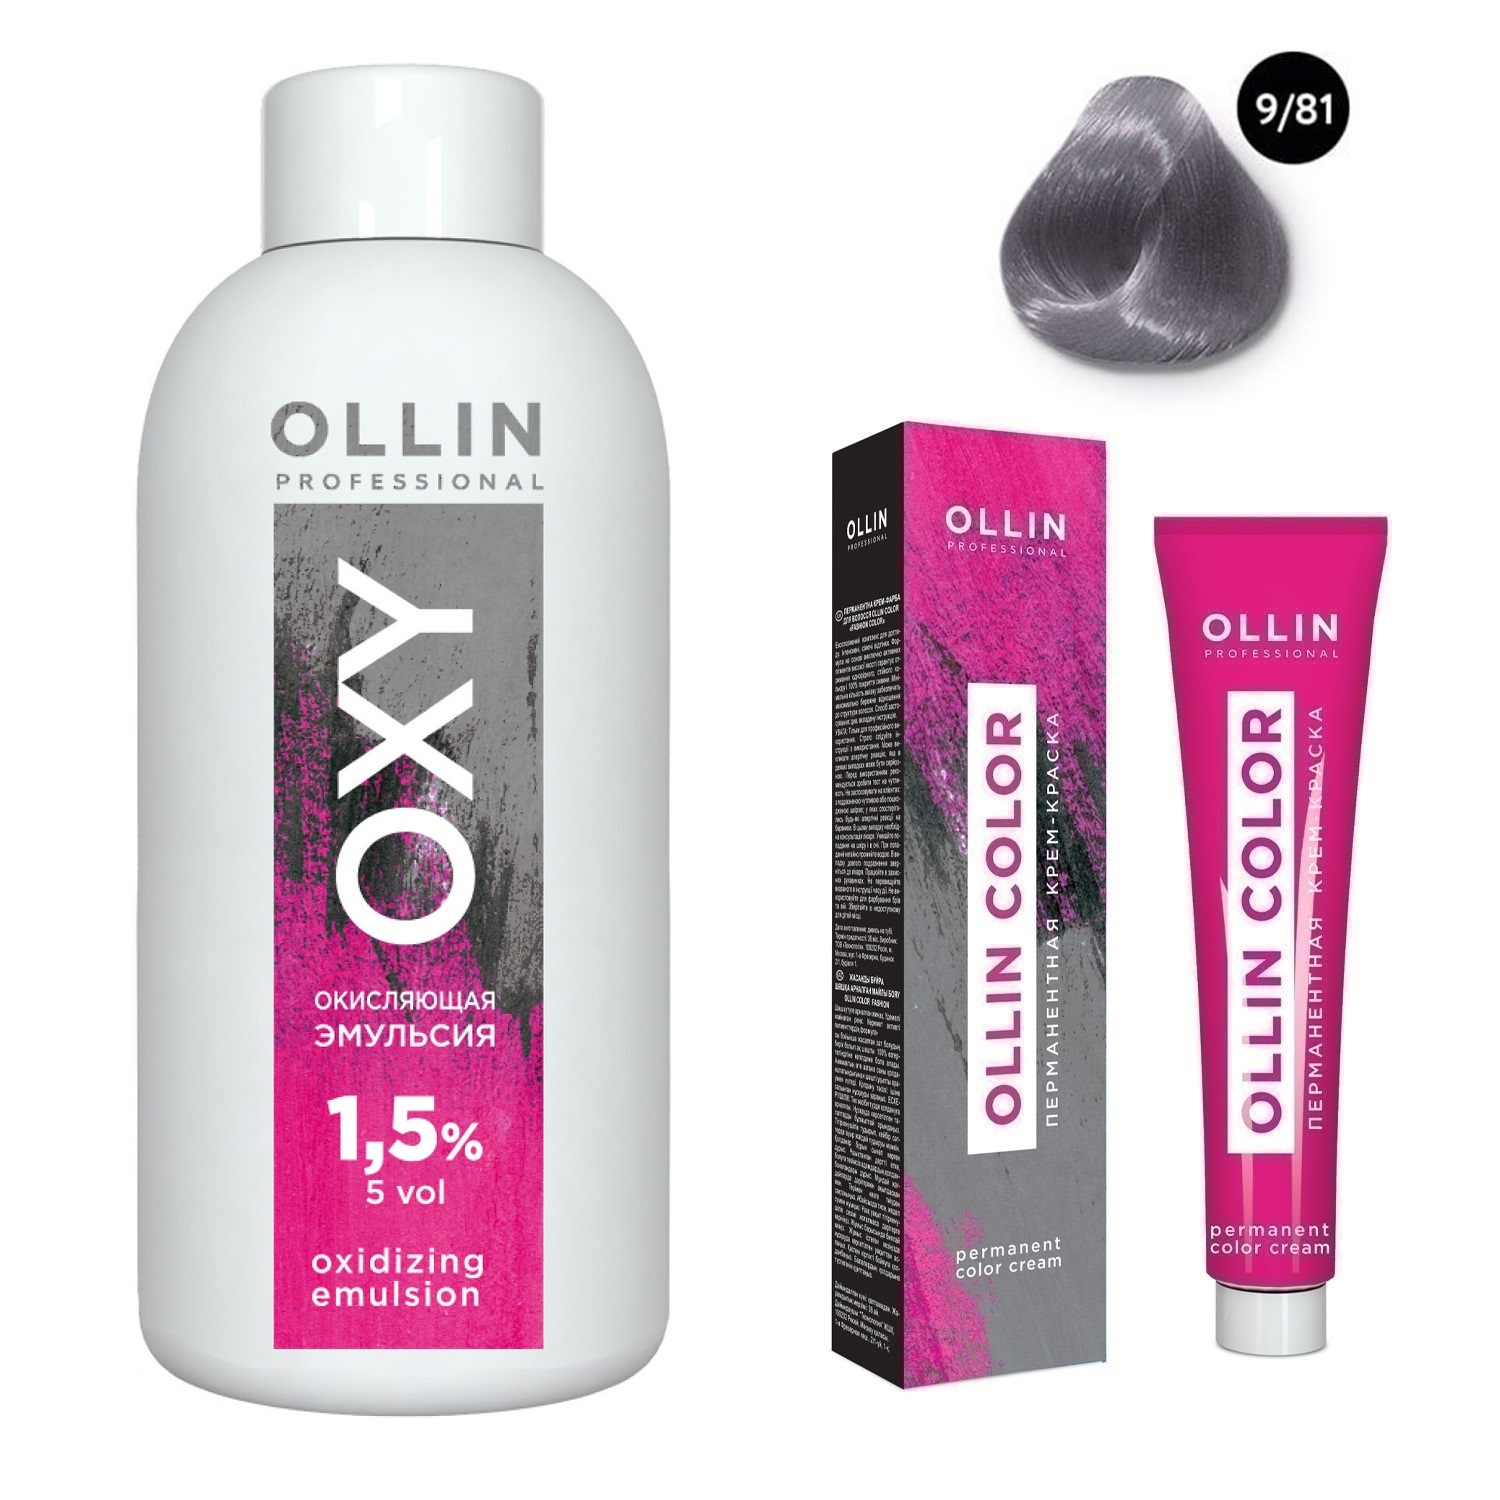 ollin professional окисляющая эмульсия oxy 9 % 1000 мл Ollin Professional Набор Перманентная крем-краска для волос Ollin Color оттенок 9/81 блондин жемчужно-пепельный 100 мл + Окисляющая эмульсия Oxy 1,5% 150 мл (Ollin Professional, Ollin Color)